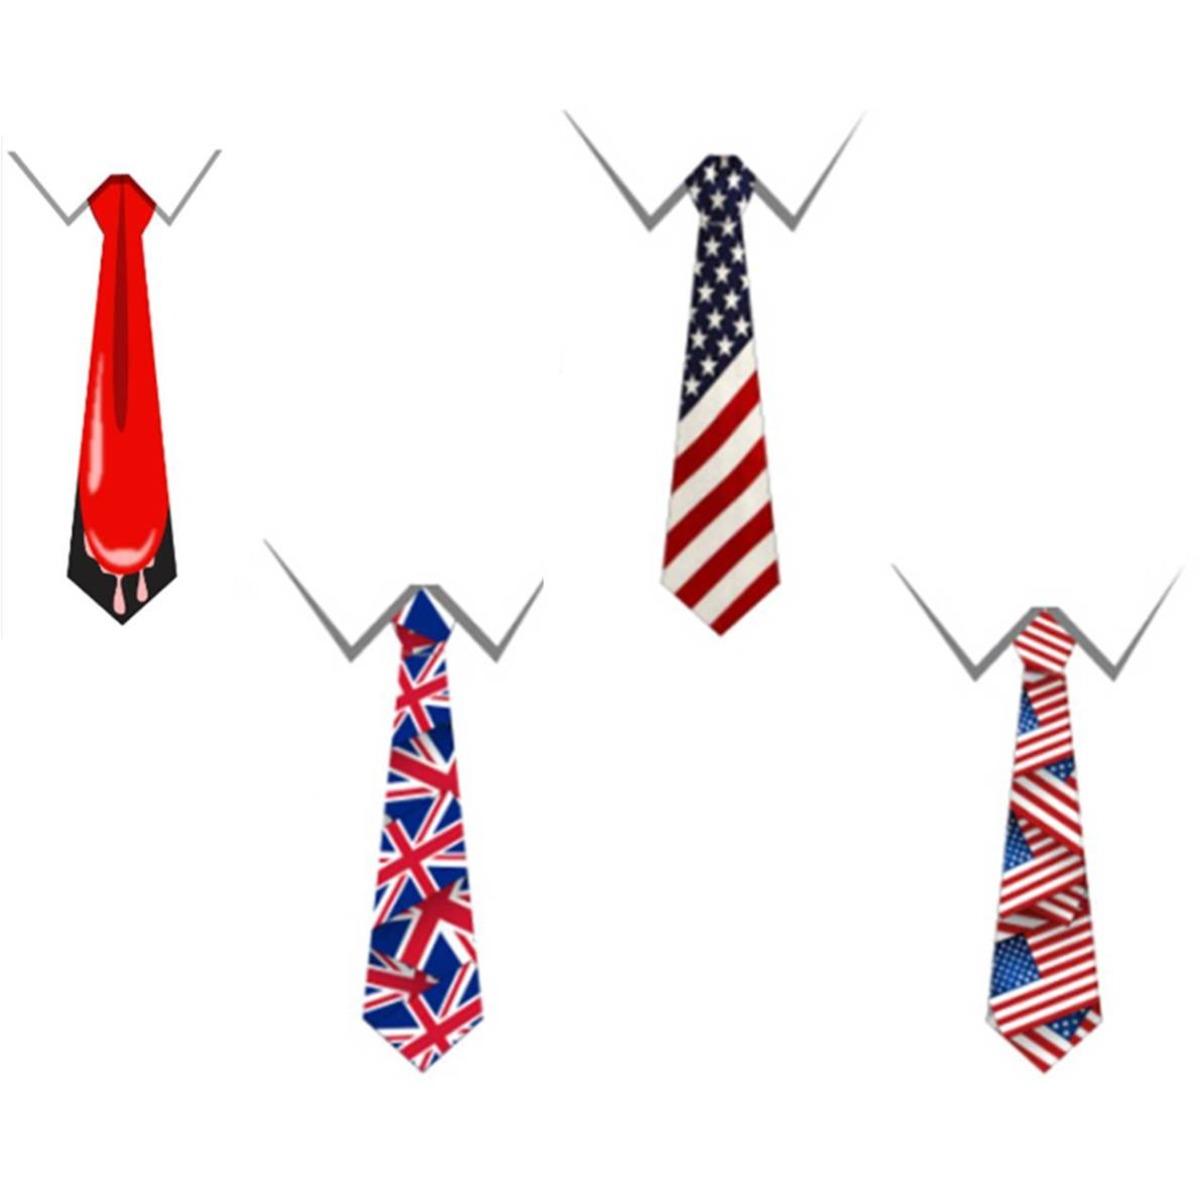 Cravate motif drapeau Royaume-Uni - Longueur 38 cm - Différents modèles